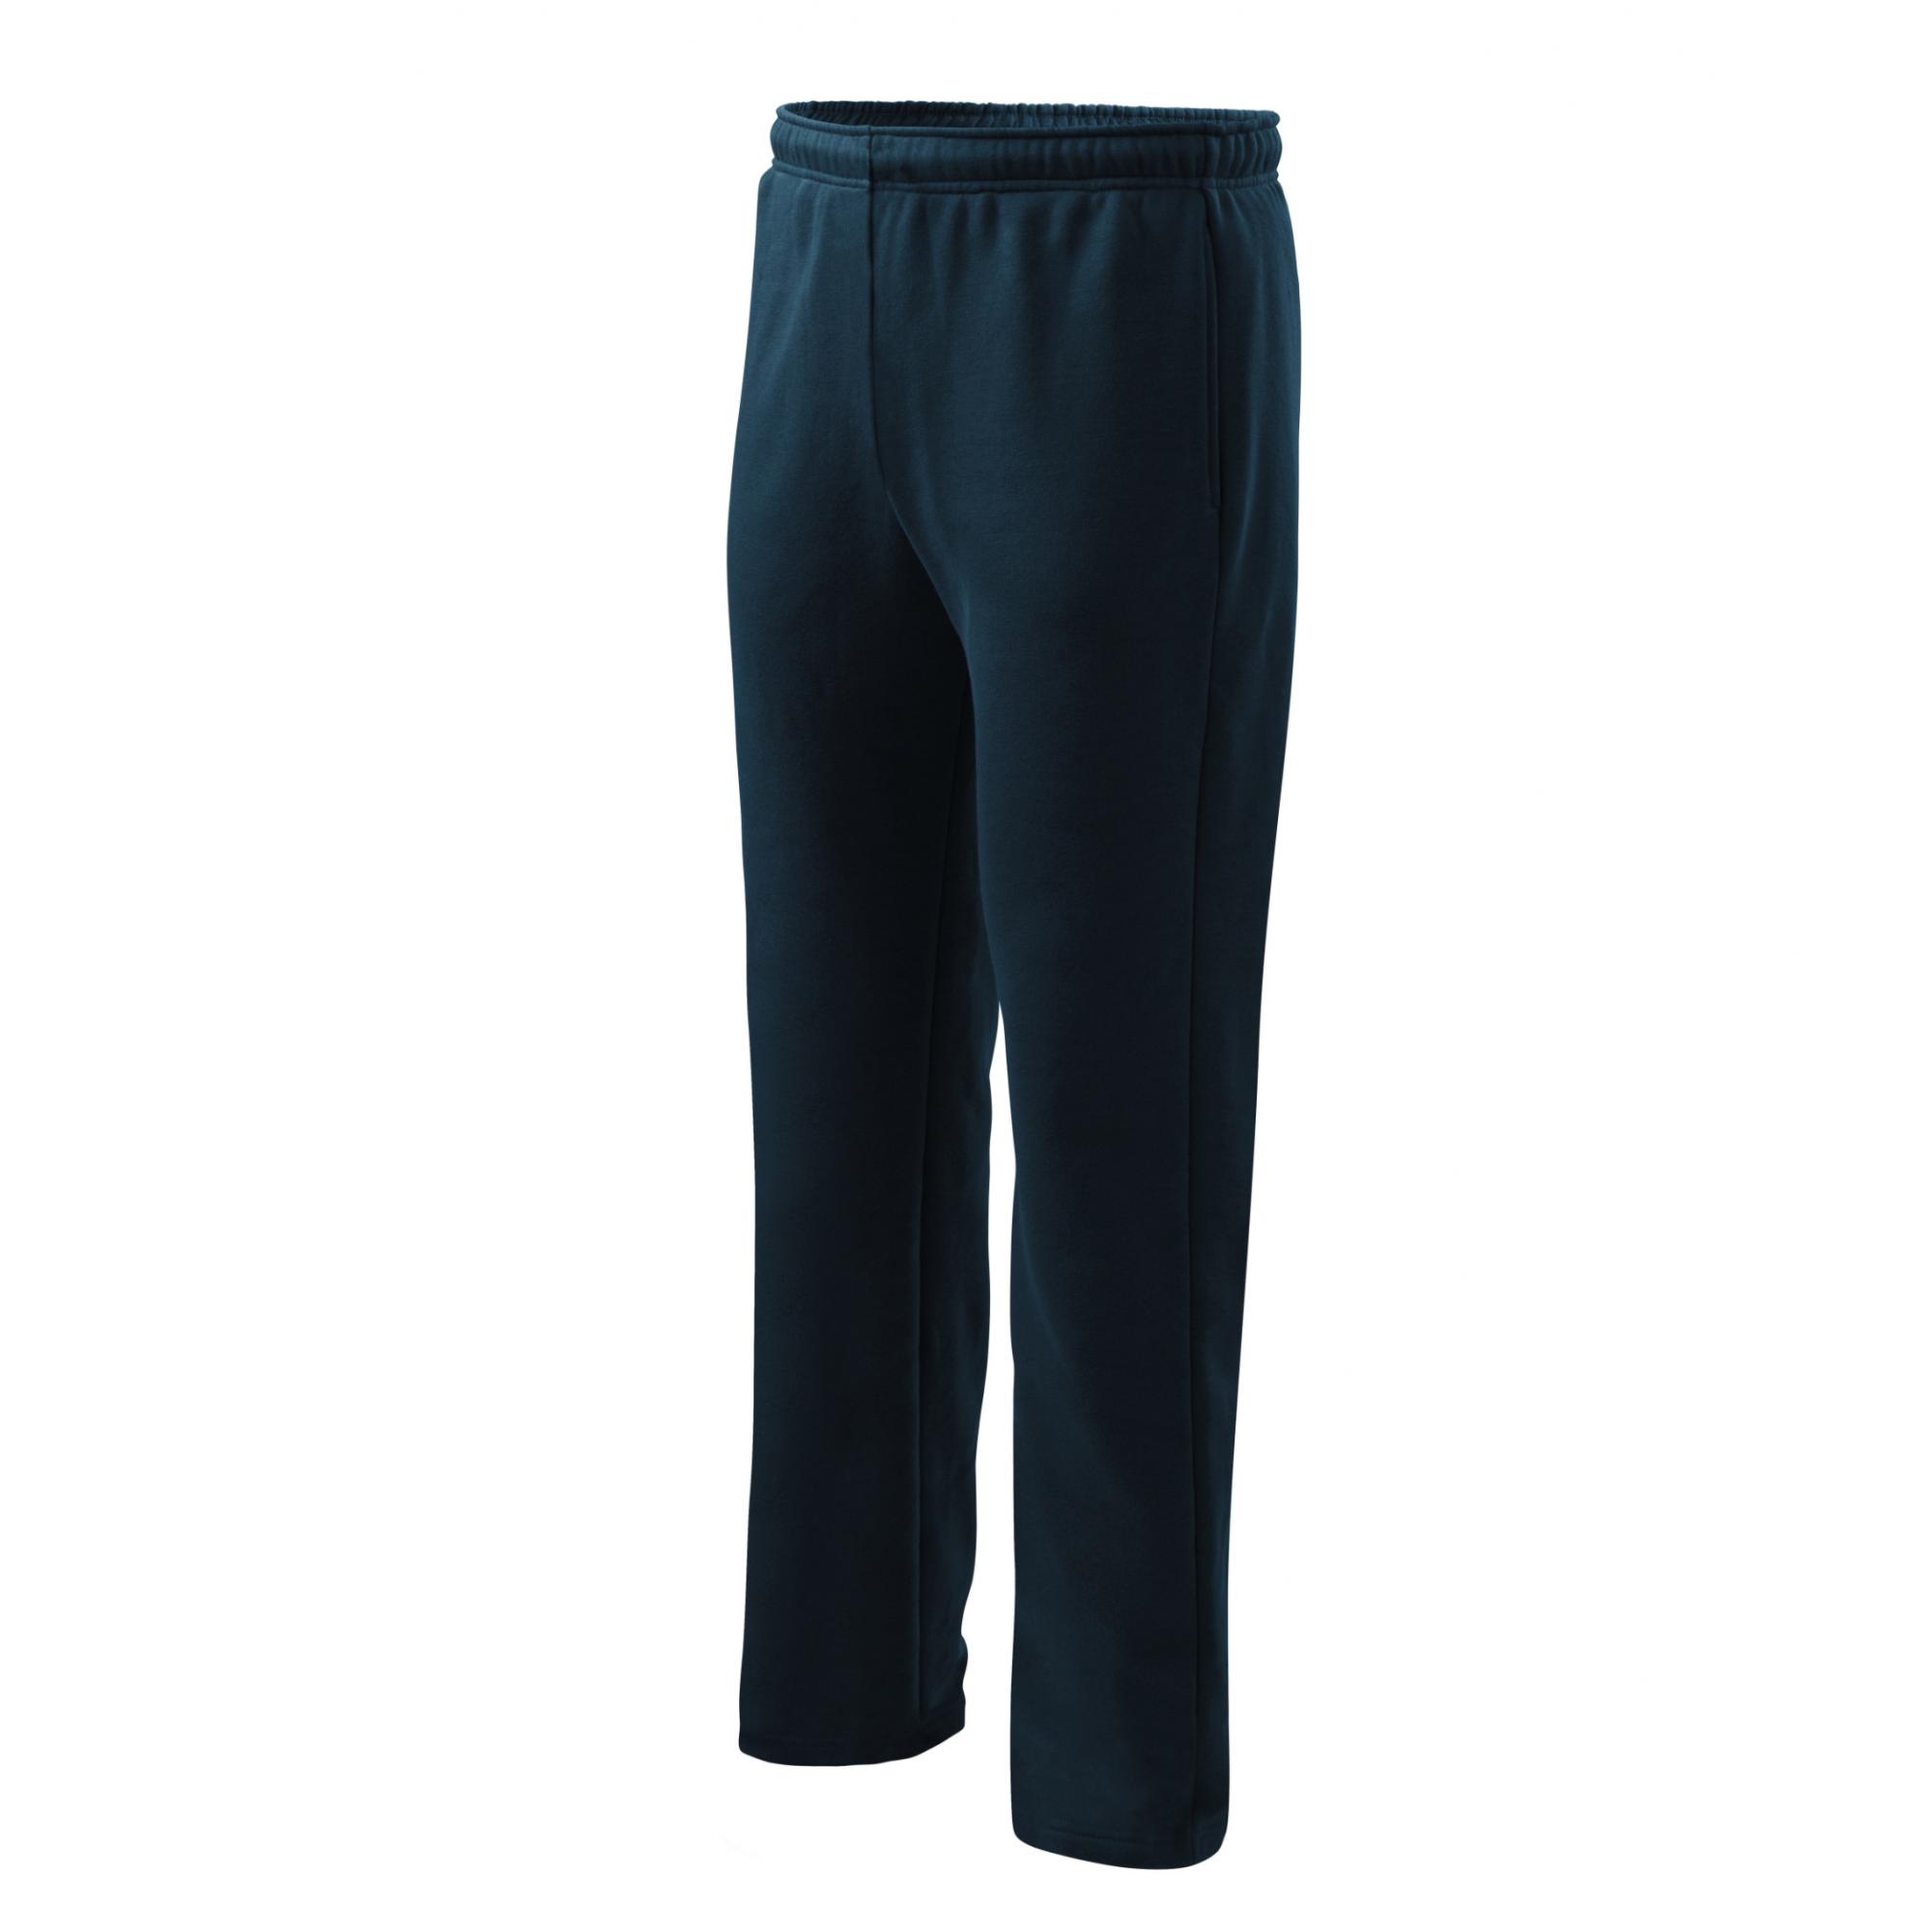 Pantaloni pentru bărbaţi/copii Comfort 607 Albastru marin L